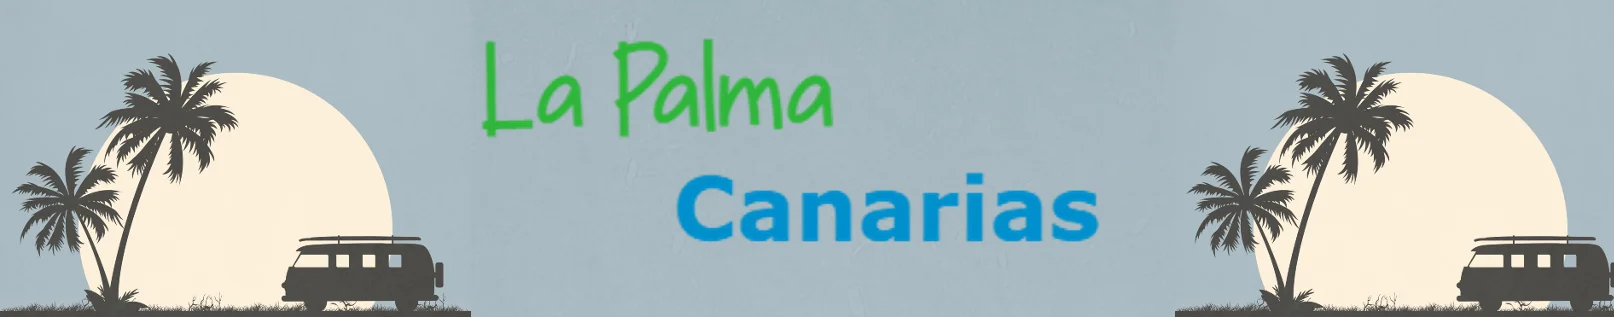 La Palma Canarias